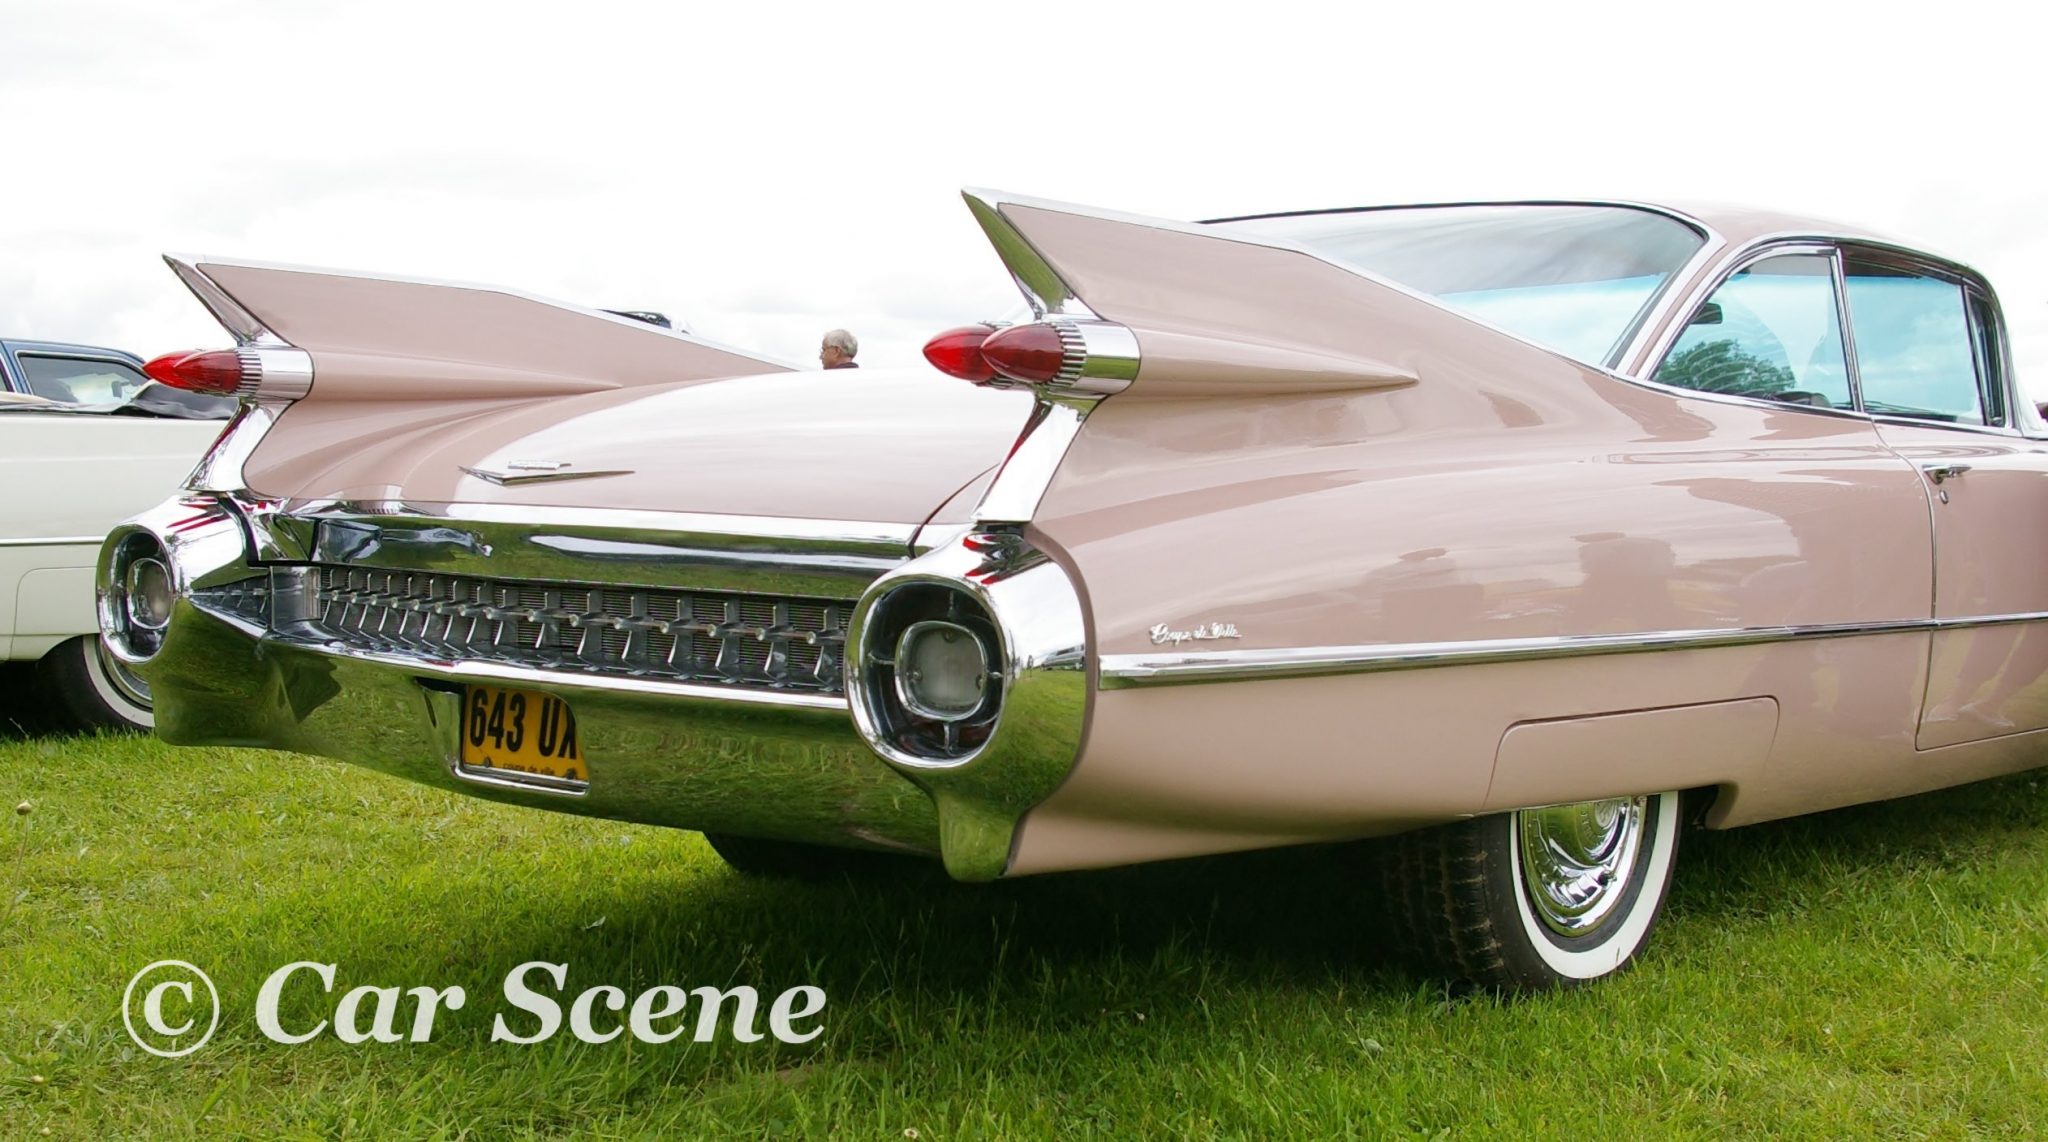 1959 Cadillac Coupe De Ville rear quarter view